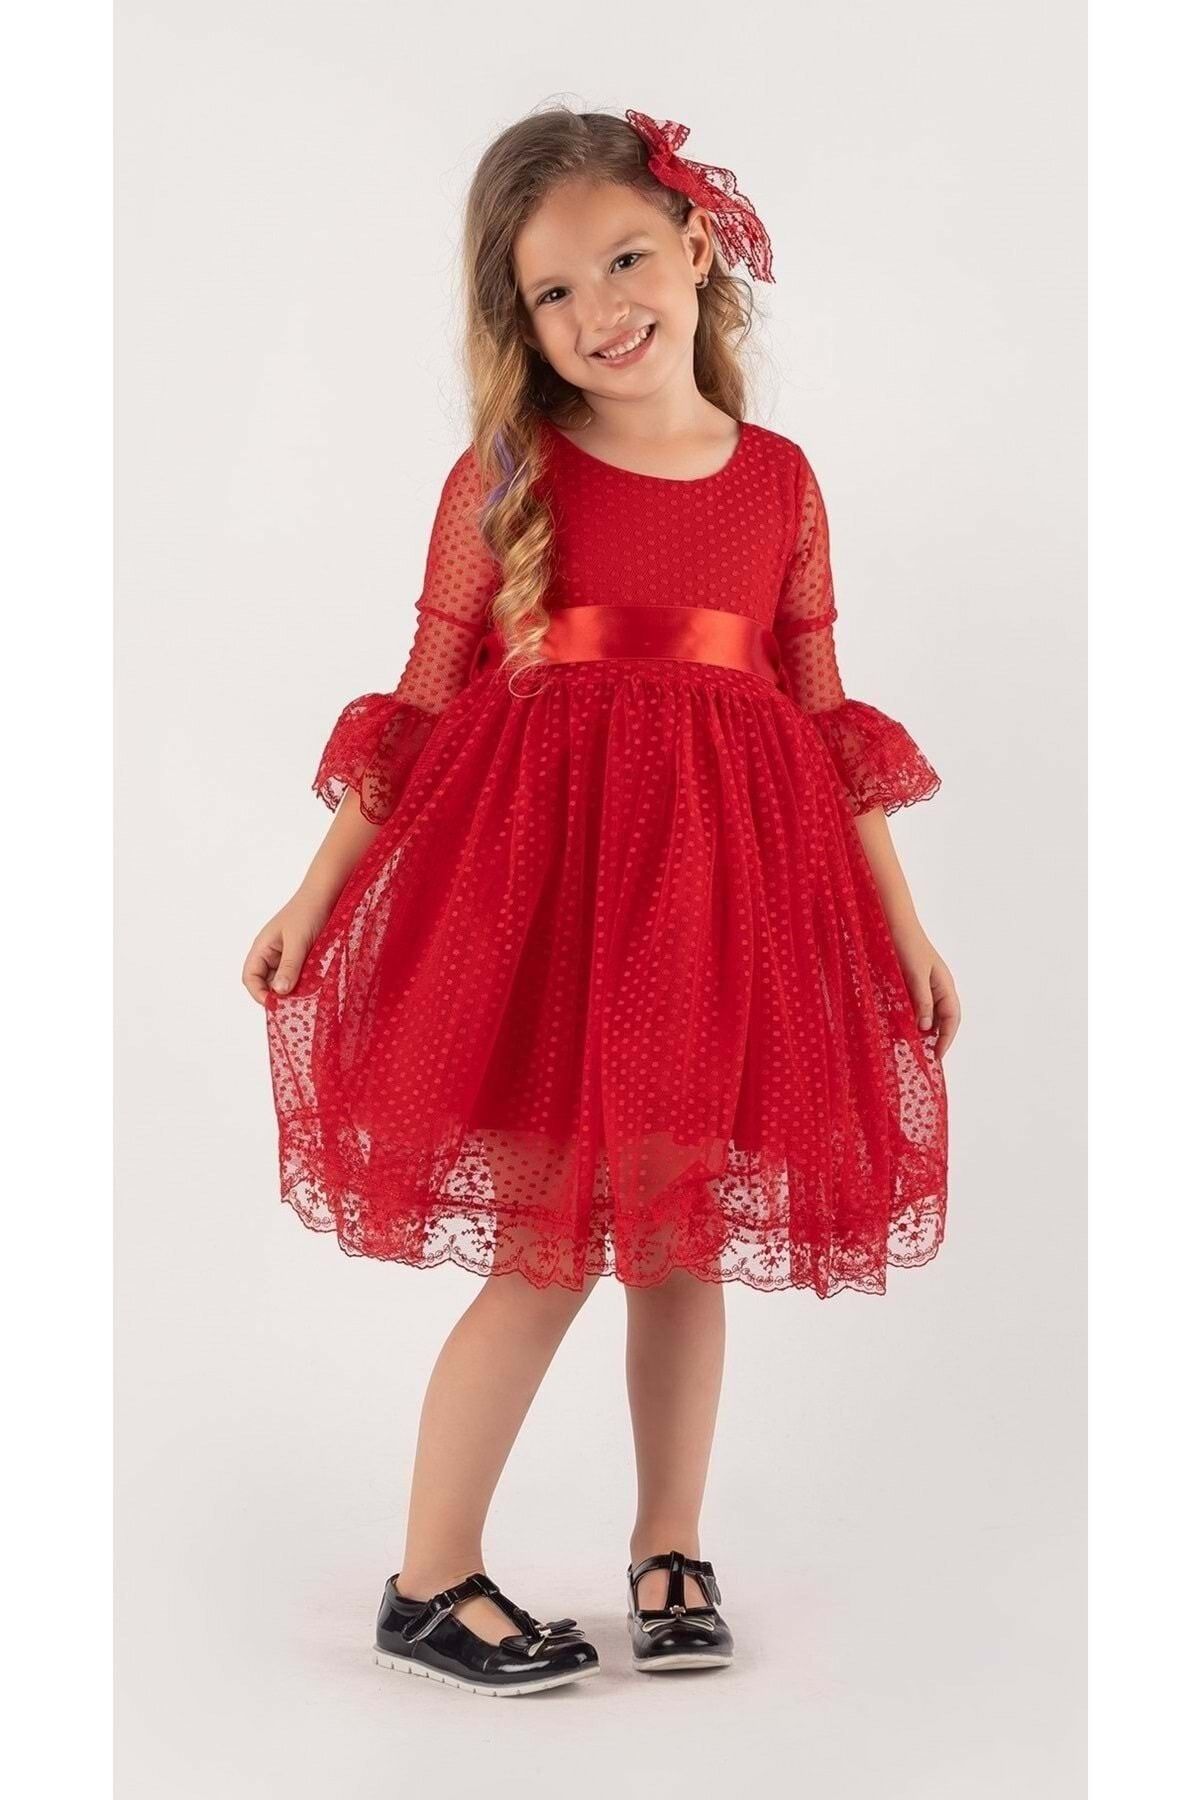 Mnk Rengarenk Fransız Dantel Tokalı Kız Çocuk Elbise Kırmızı